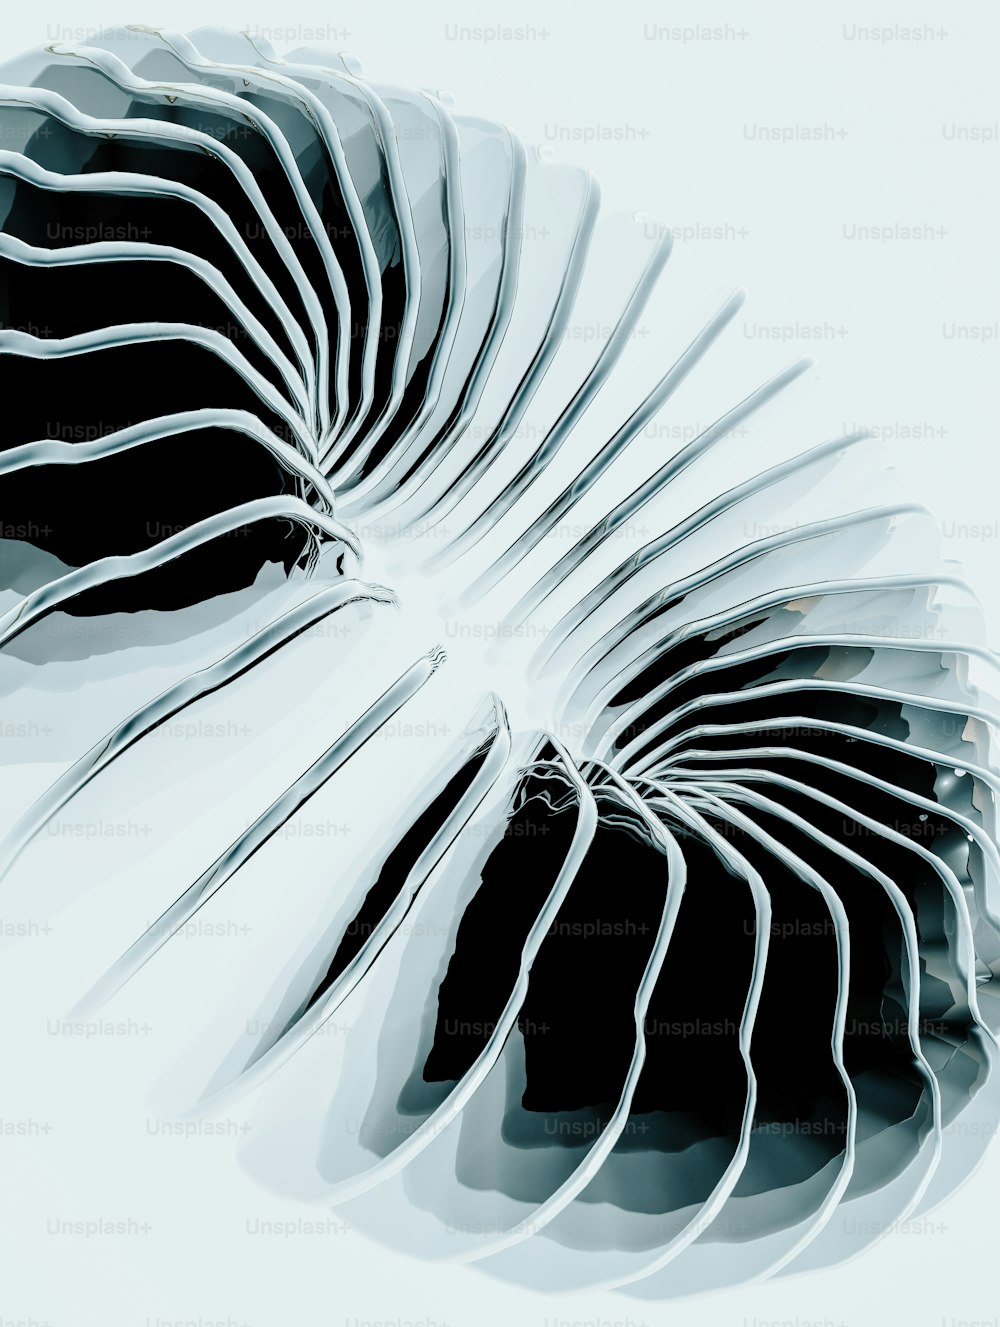 Una foto en blanco y negro de un objeto en forma de espiral